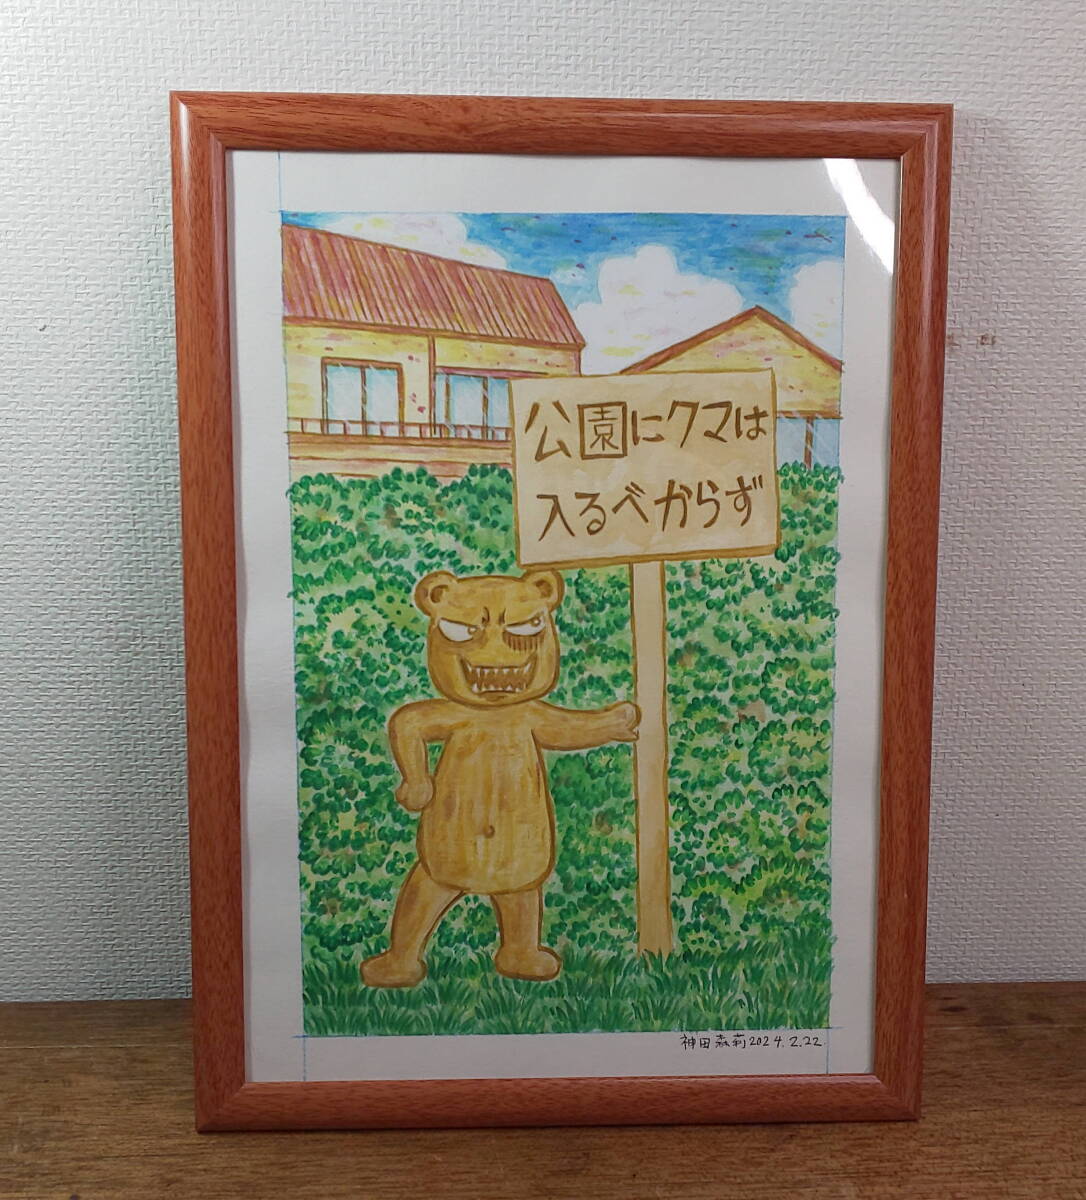 [그림 원고] 곰은 공원에 들어가지 마세요 [공포 만화가 칸다 모리] 사인, 만화, 애니메이션 상품, 징후, 손으로 그린 그림